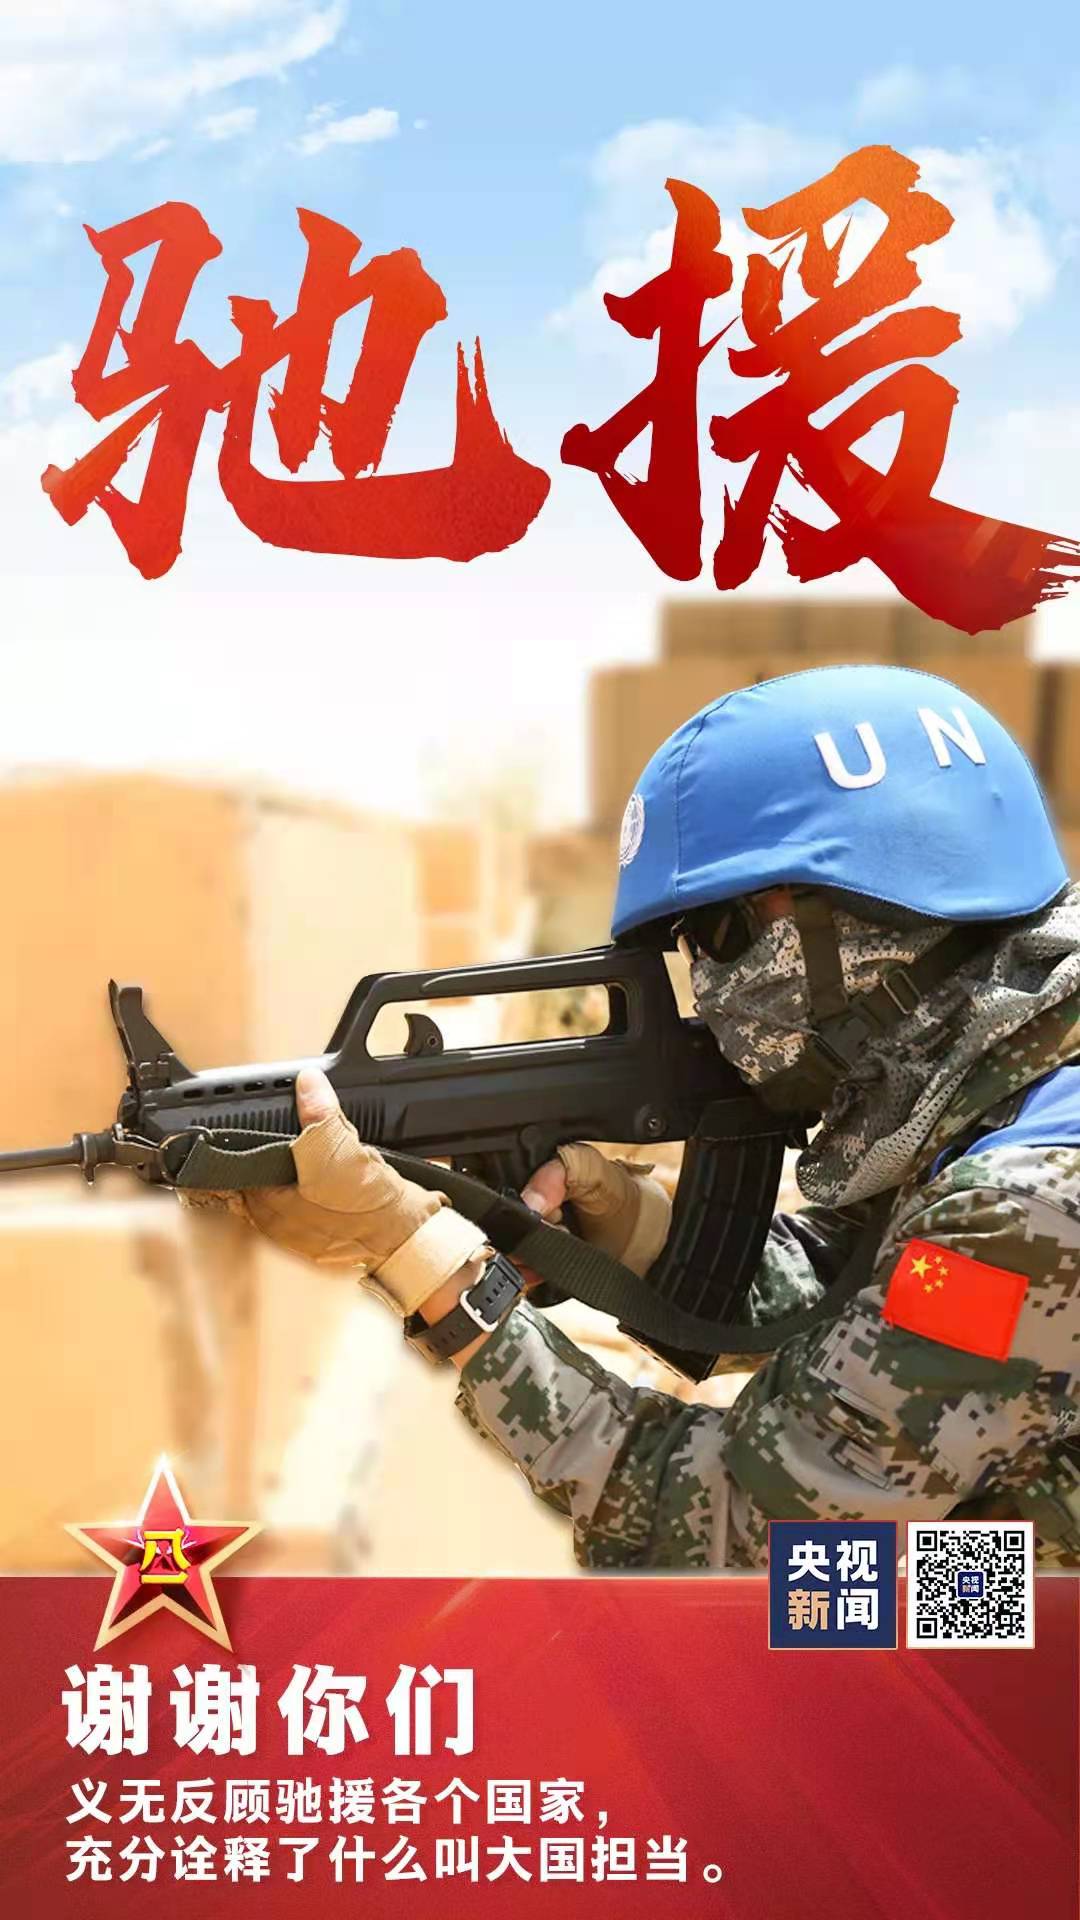 韩国征兵广告图片